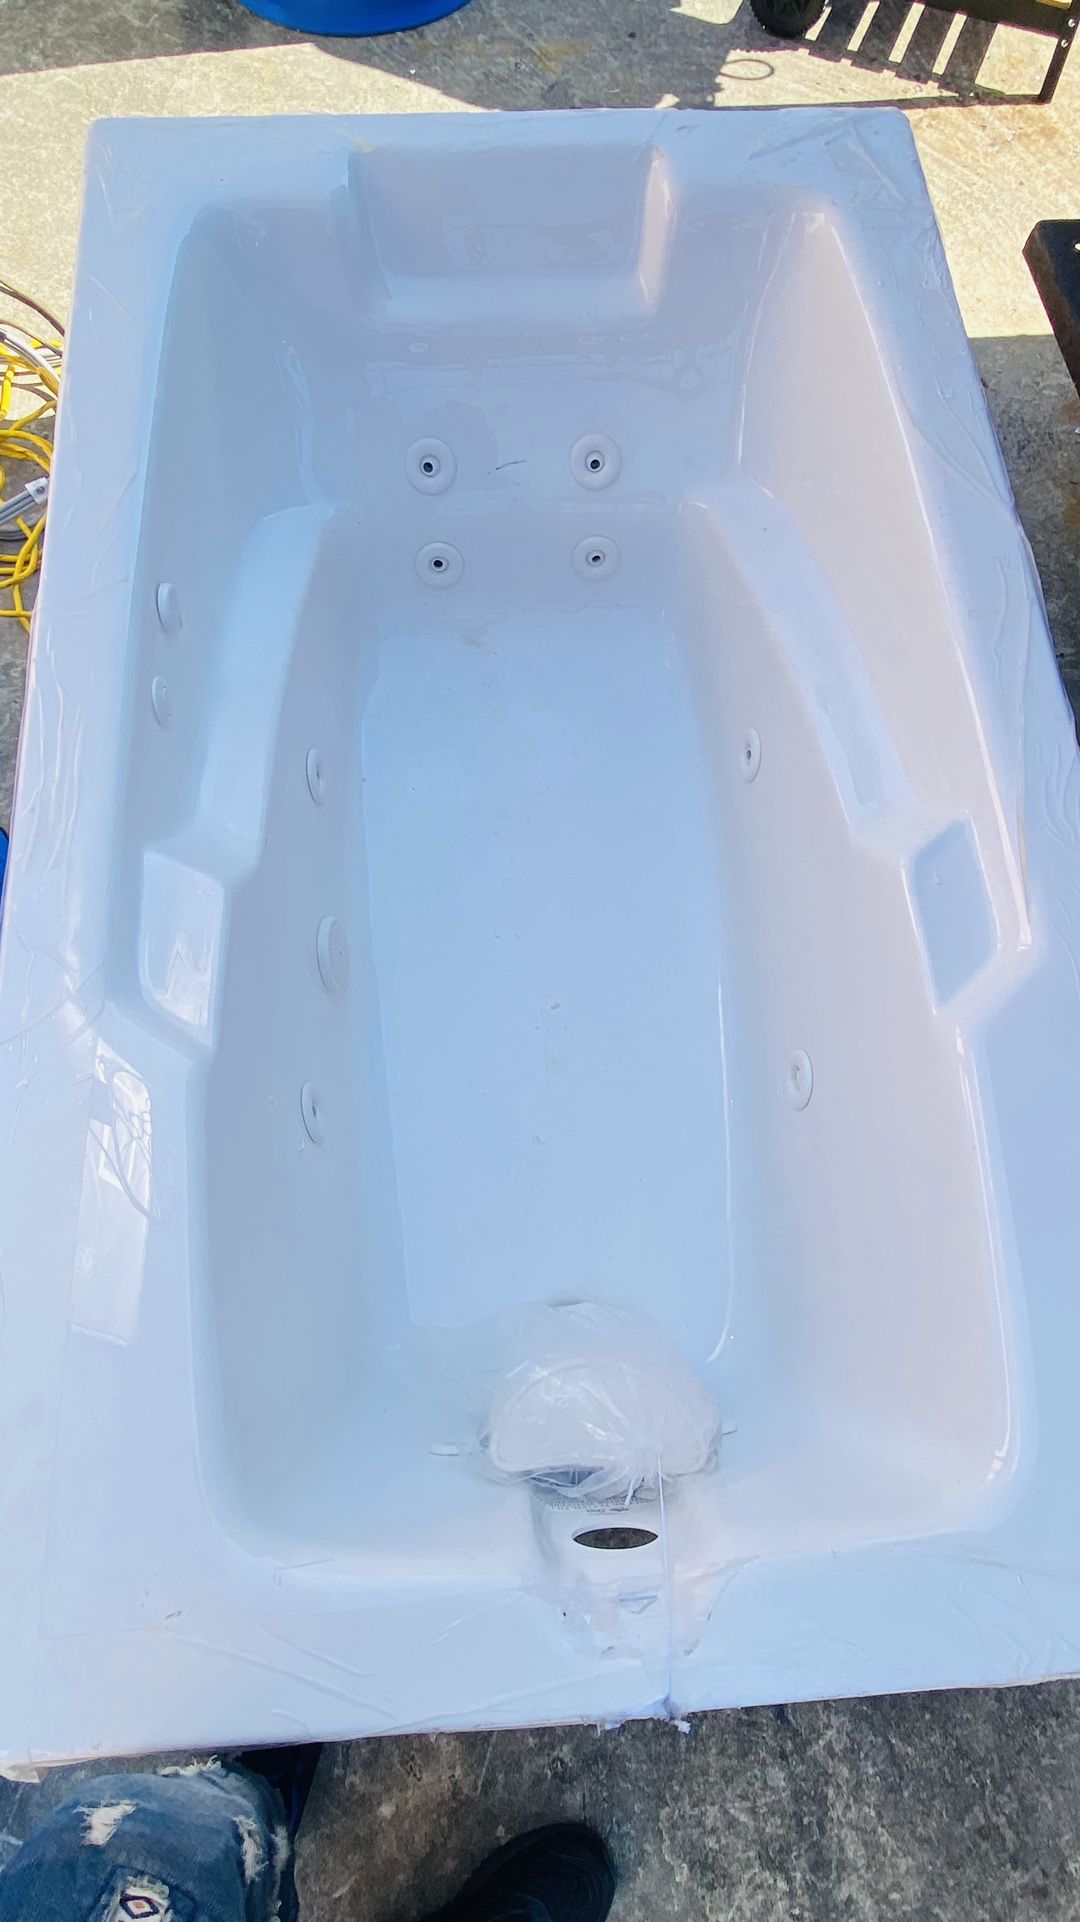 Hydro Massage Bath Tub